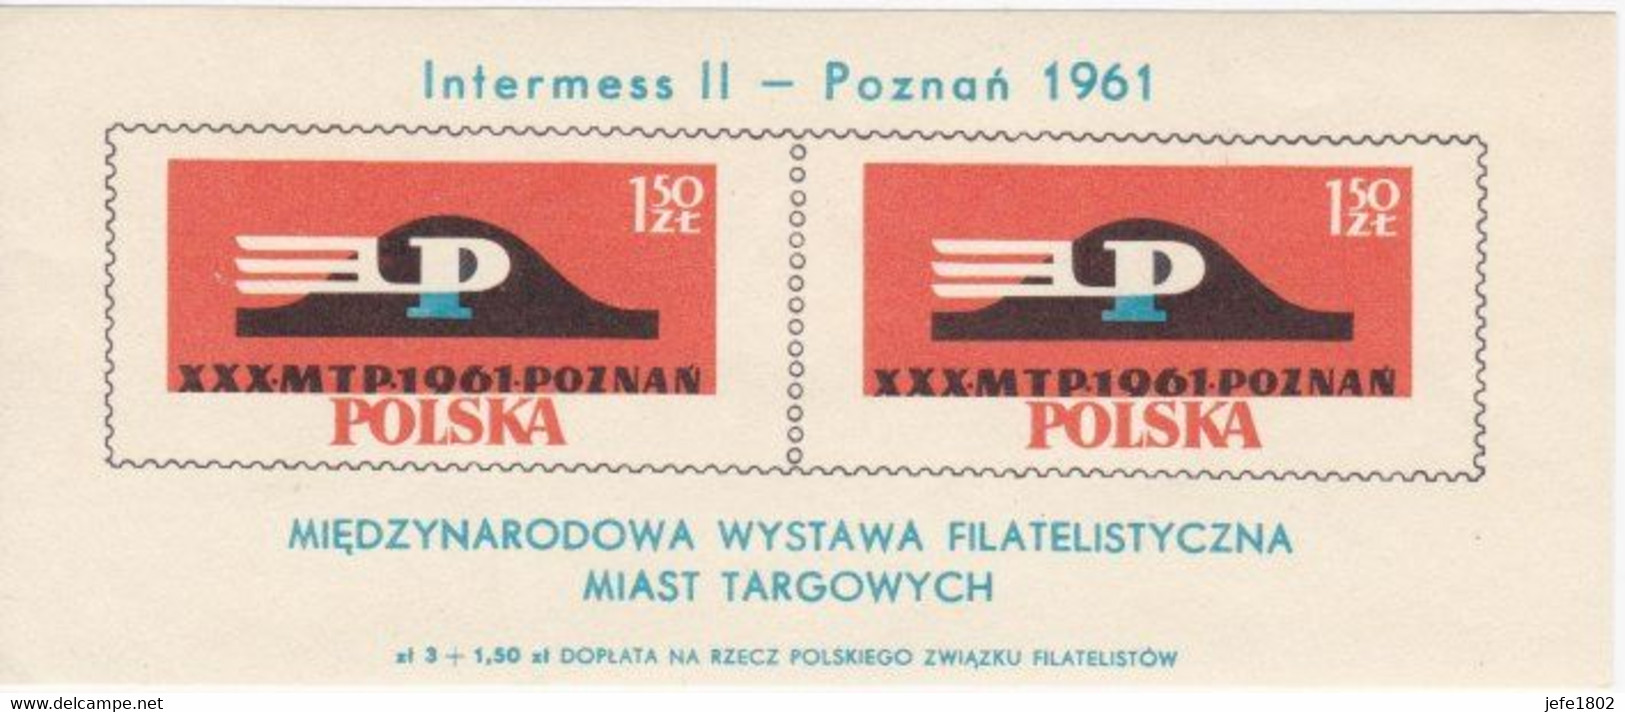 Intermesss II - Poznan 1961 - Libretti